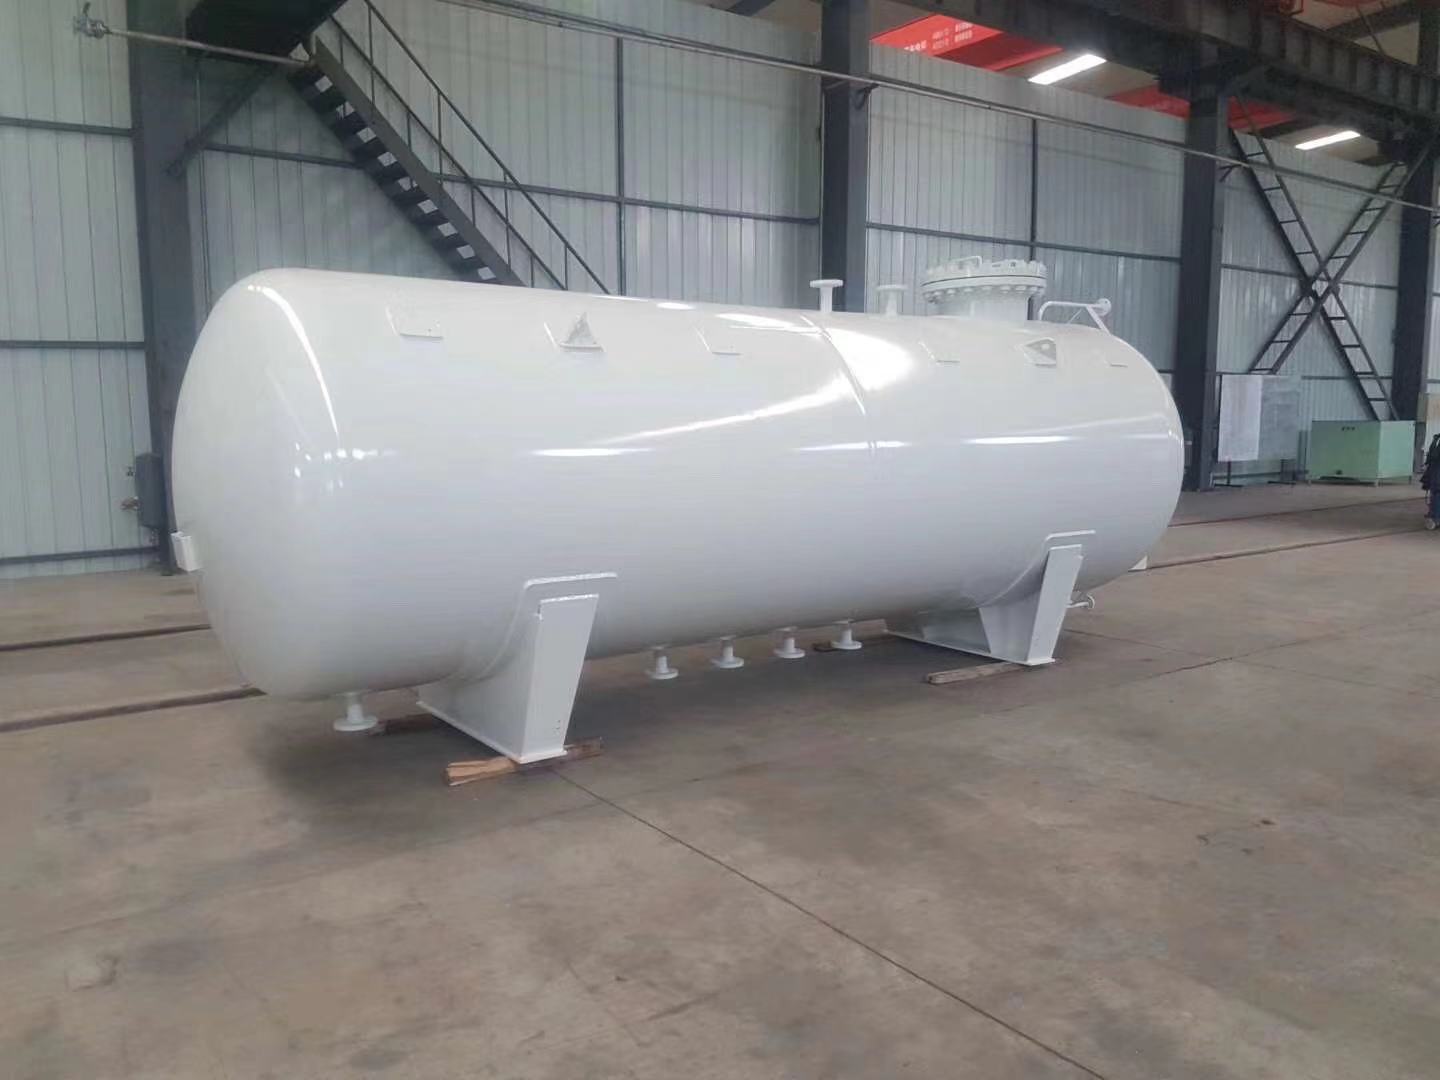 Liquefied gas storage tank installation